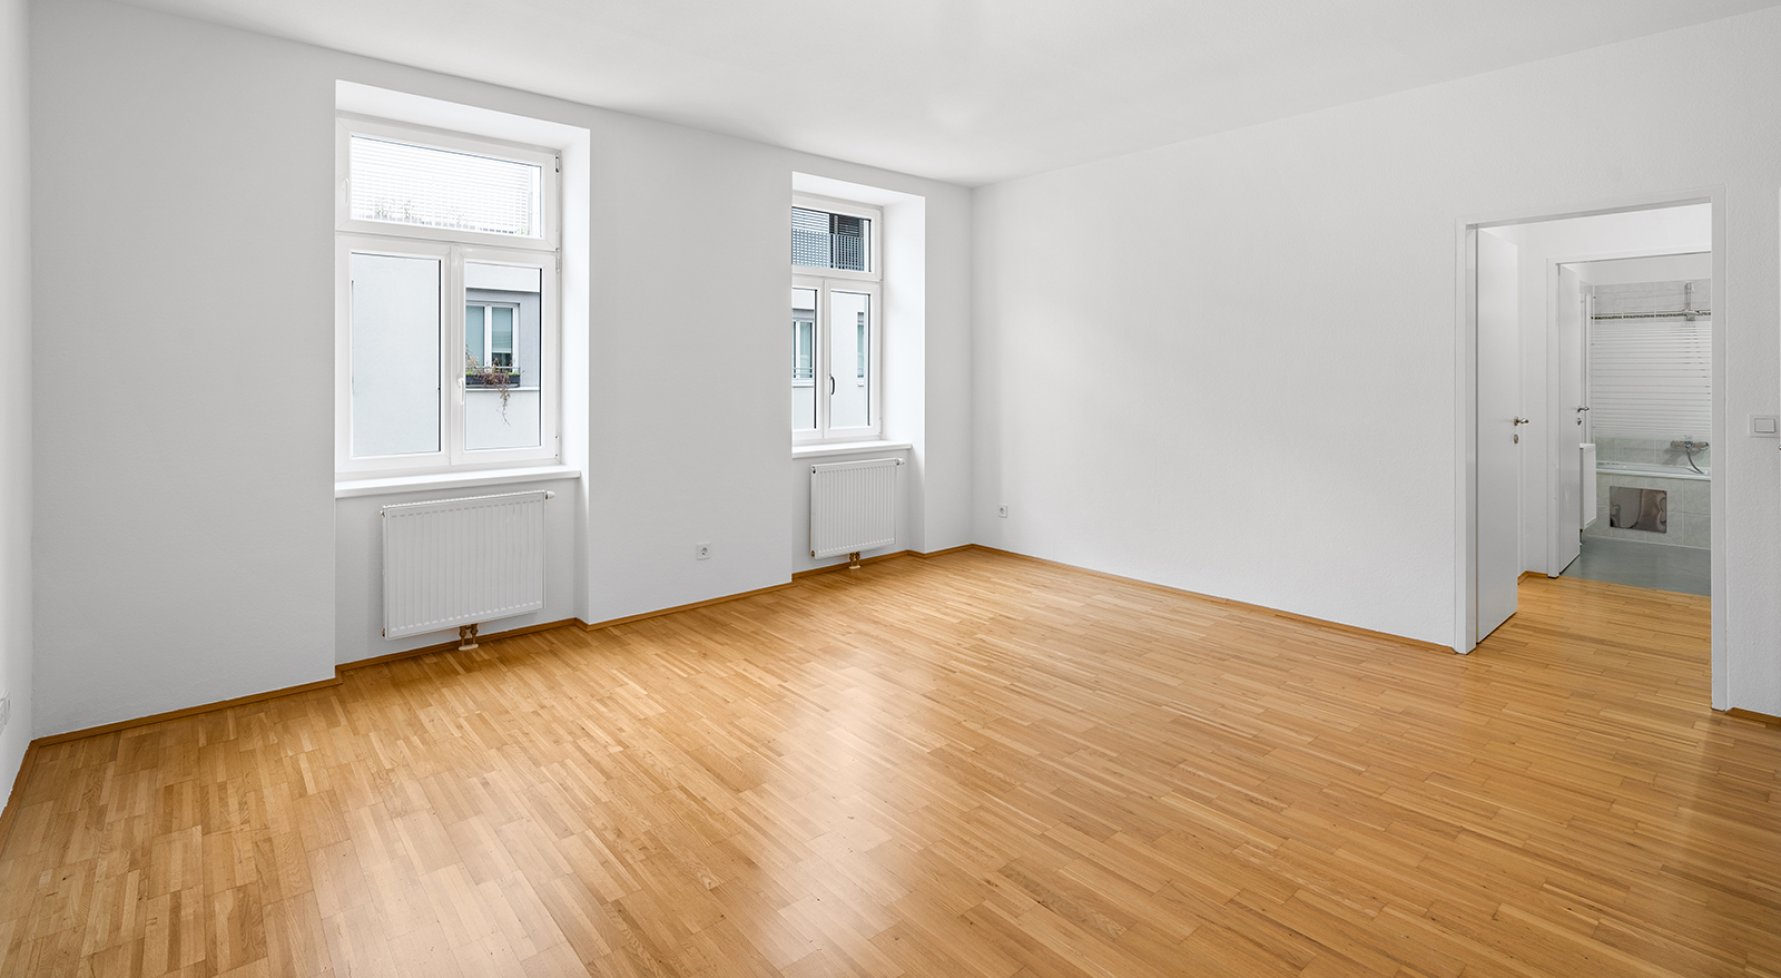 Immobilie in 1170 Wien, 17. Bezirk: 2-Zimmer-Wohnung in sanierten Altbau - bild 1